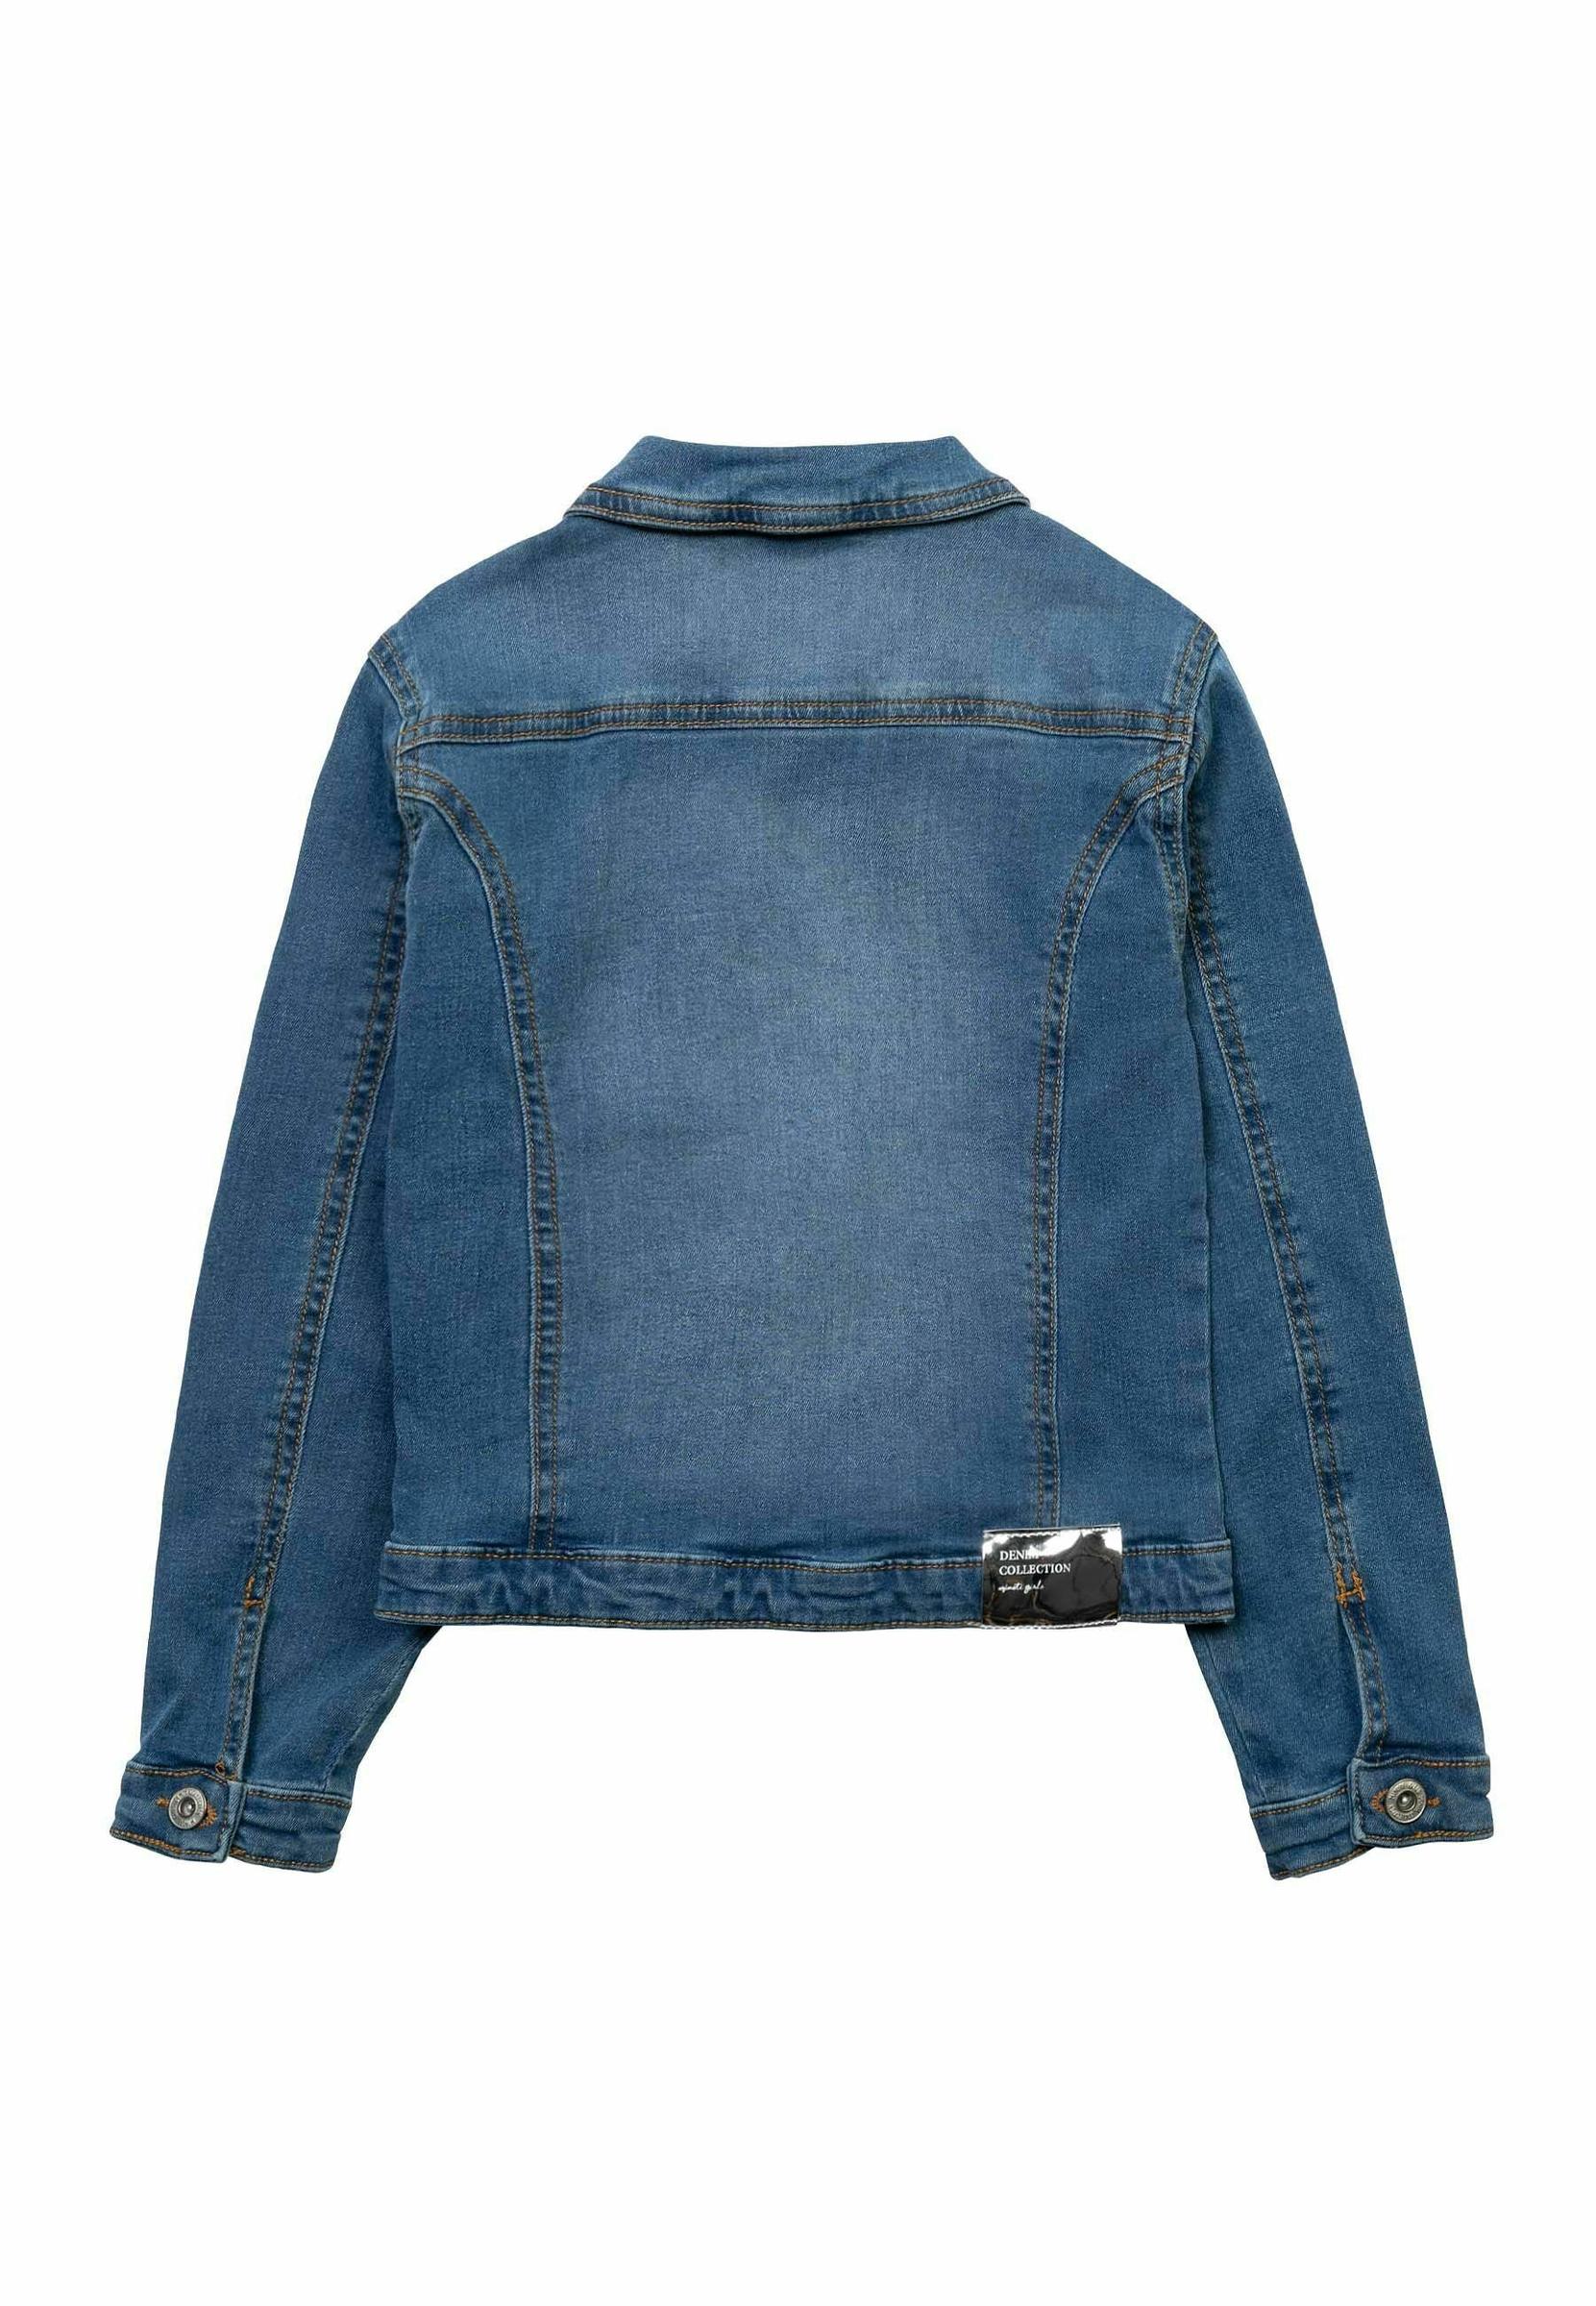 jeansowa kurtka naszywki wzór retro 